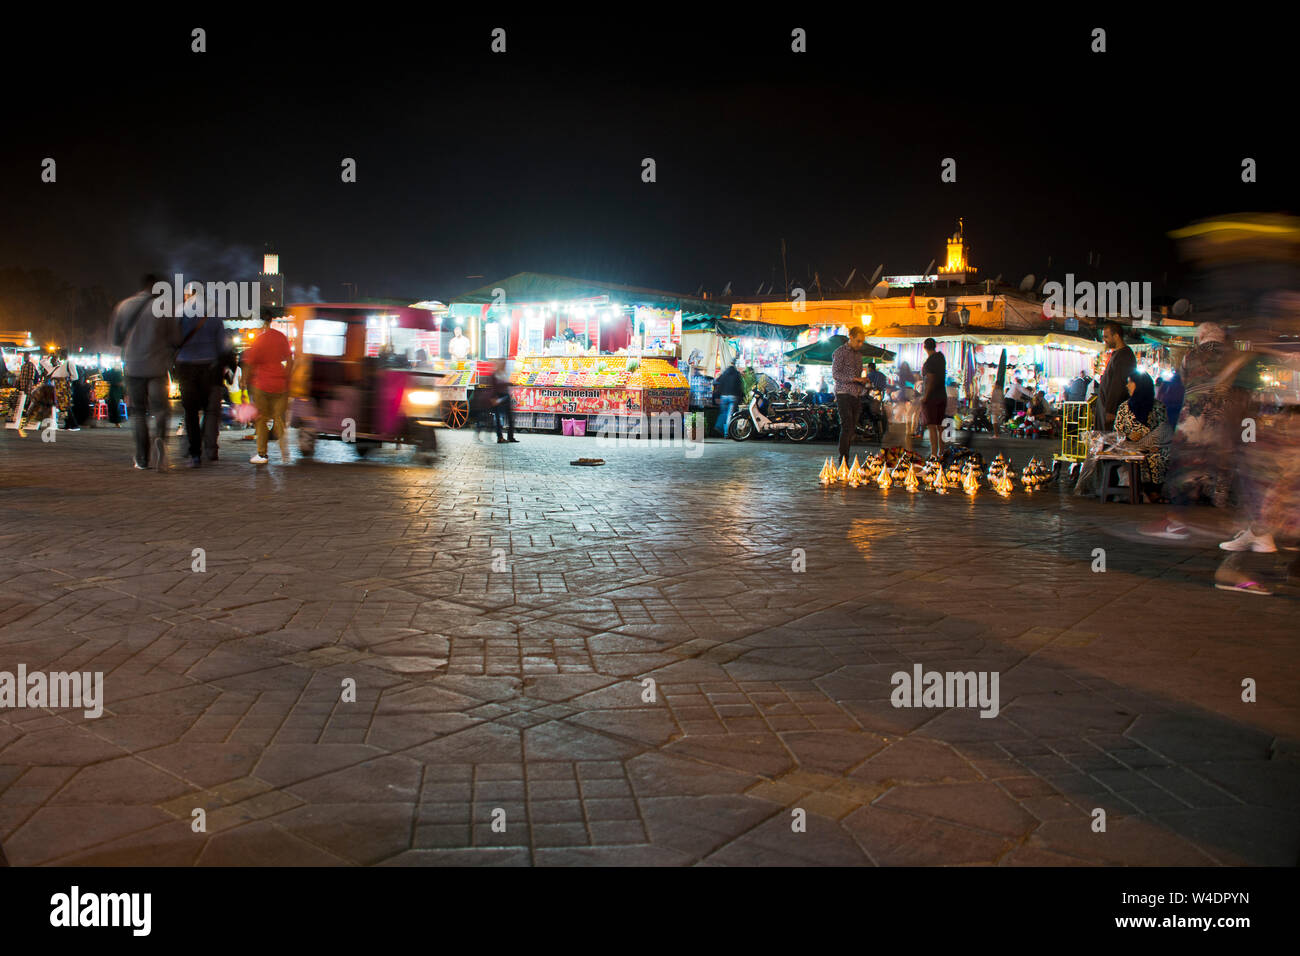 Nacht Markt in Marrakesch Jema El Fna Abend Sammlung von Einheimischen und Touristen am traditionellen lebendigen Islamischen low light Marktplatz in Marokko Stockfoto